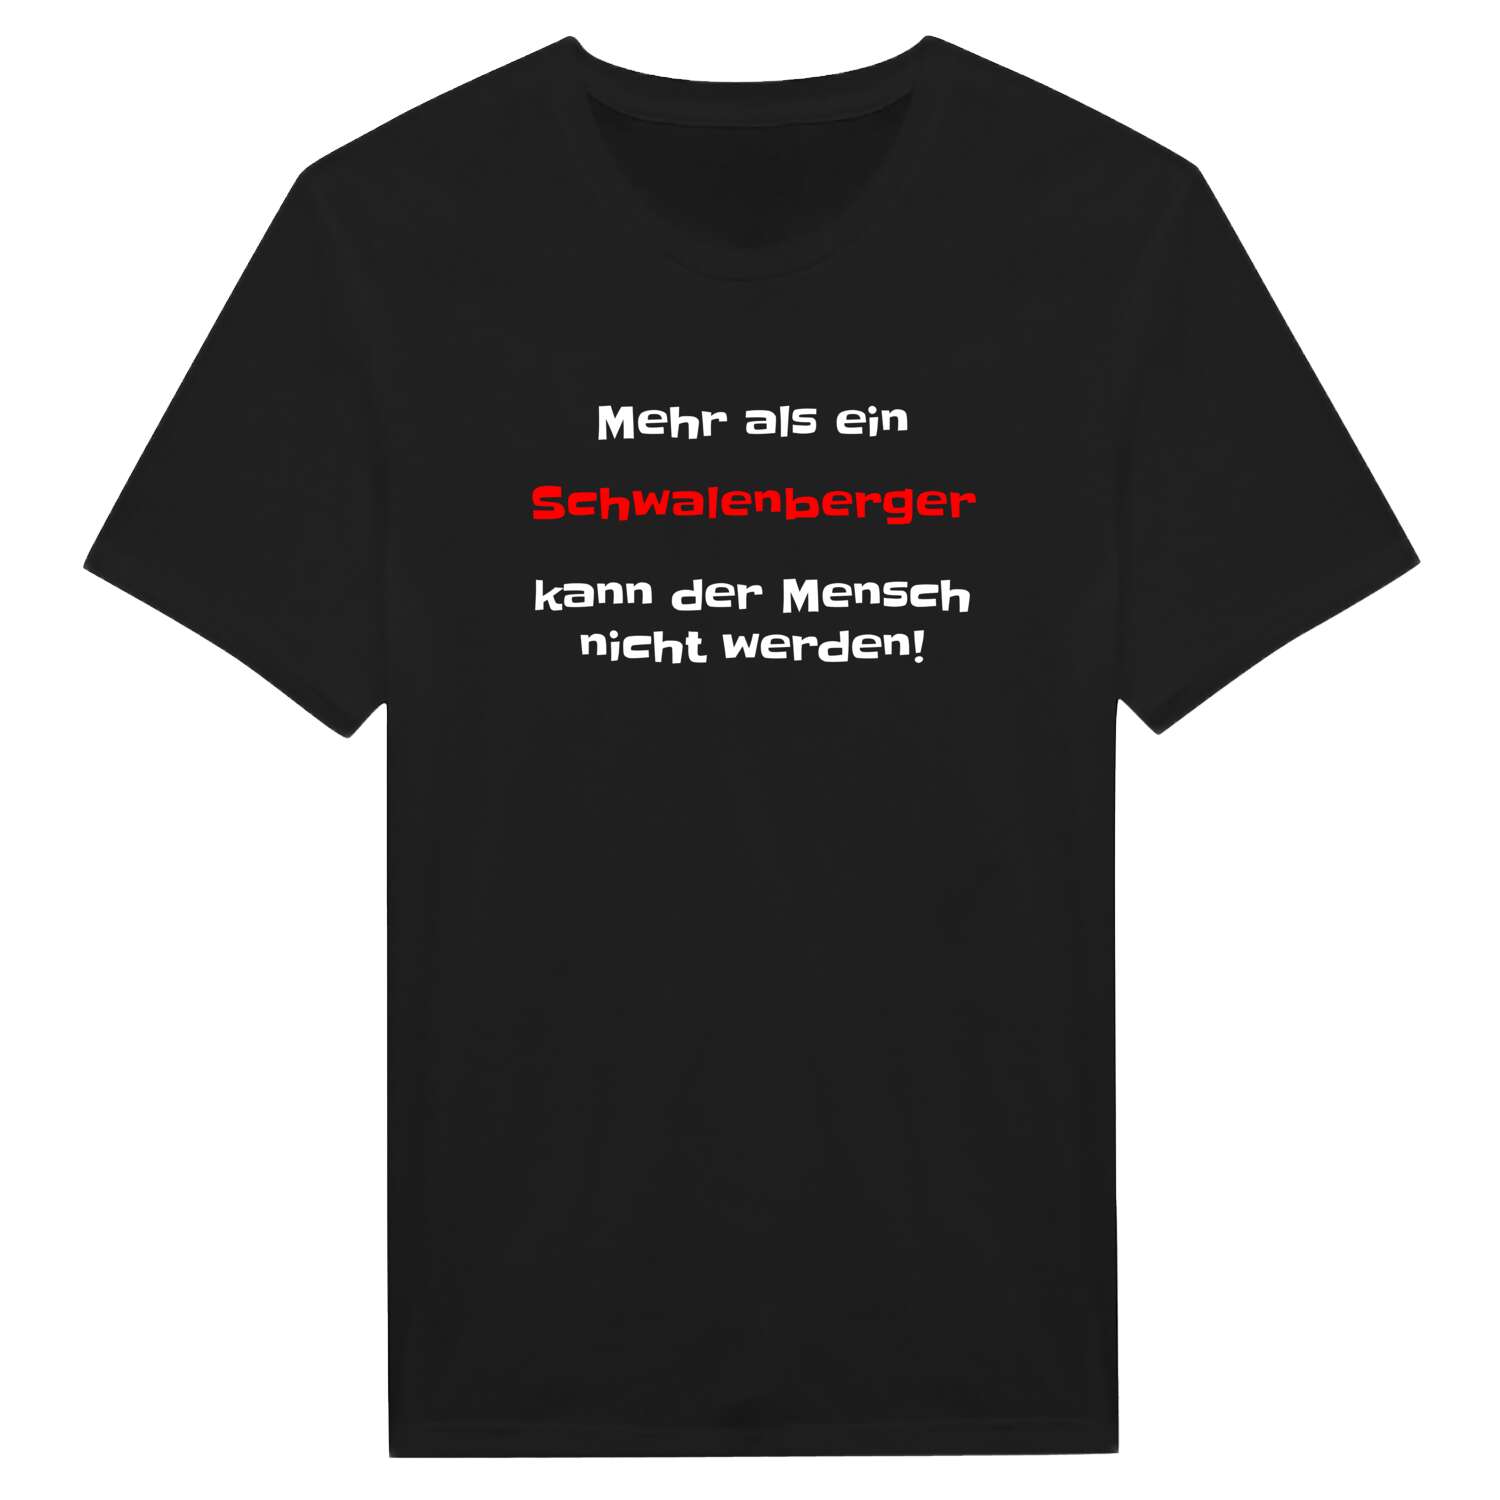 Schwalenberg T-Shirt »Mehr als ein«